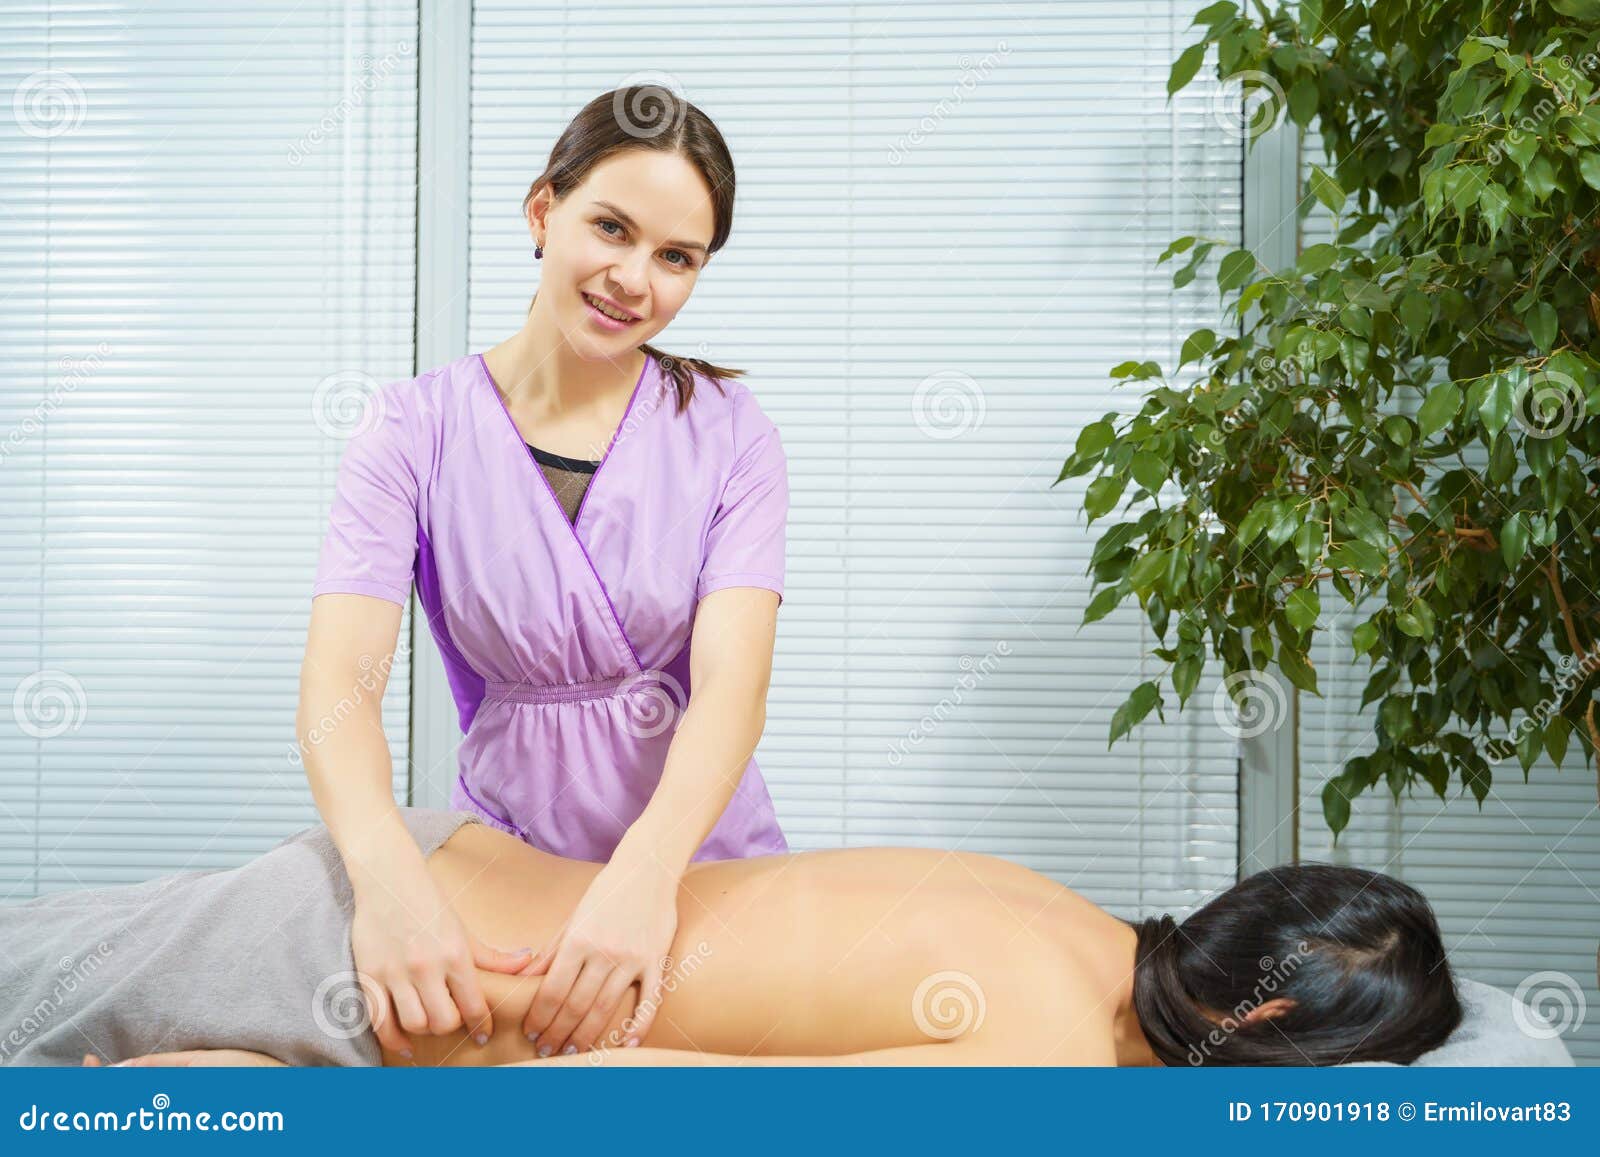 Portrait Of A Smiling Massage Therapist Woman Massaging A Yo